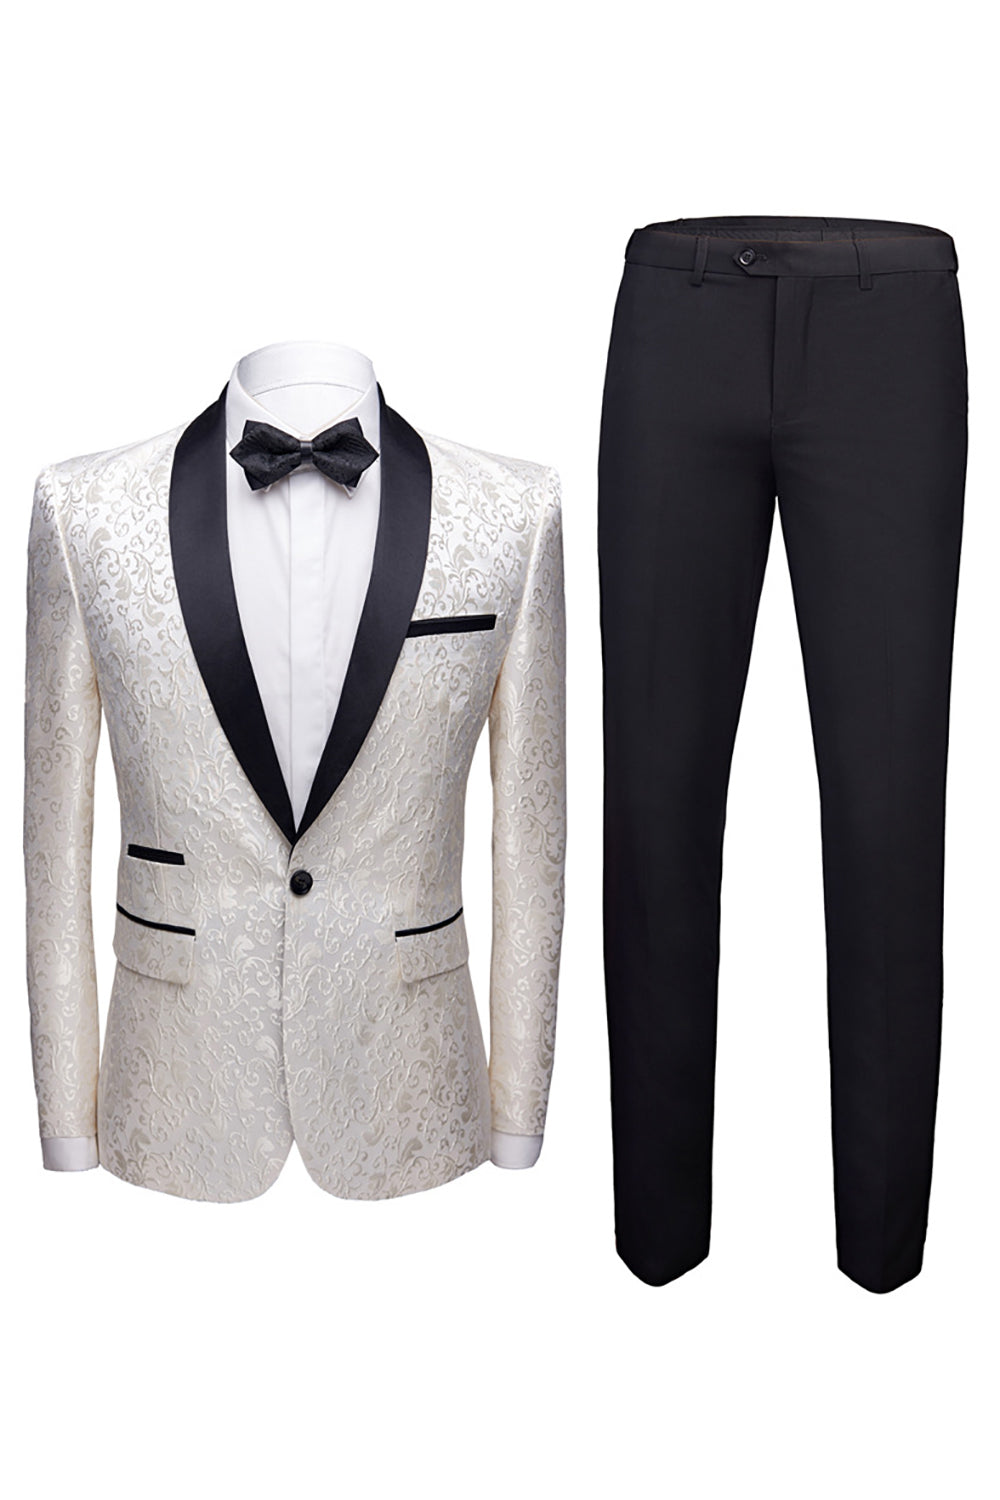 Black 2 Pieces Jacquard Men's Wedding Suits